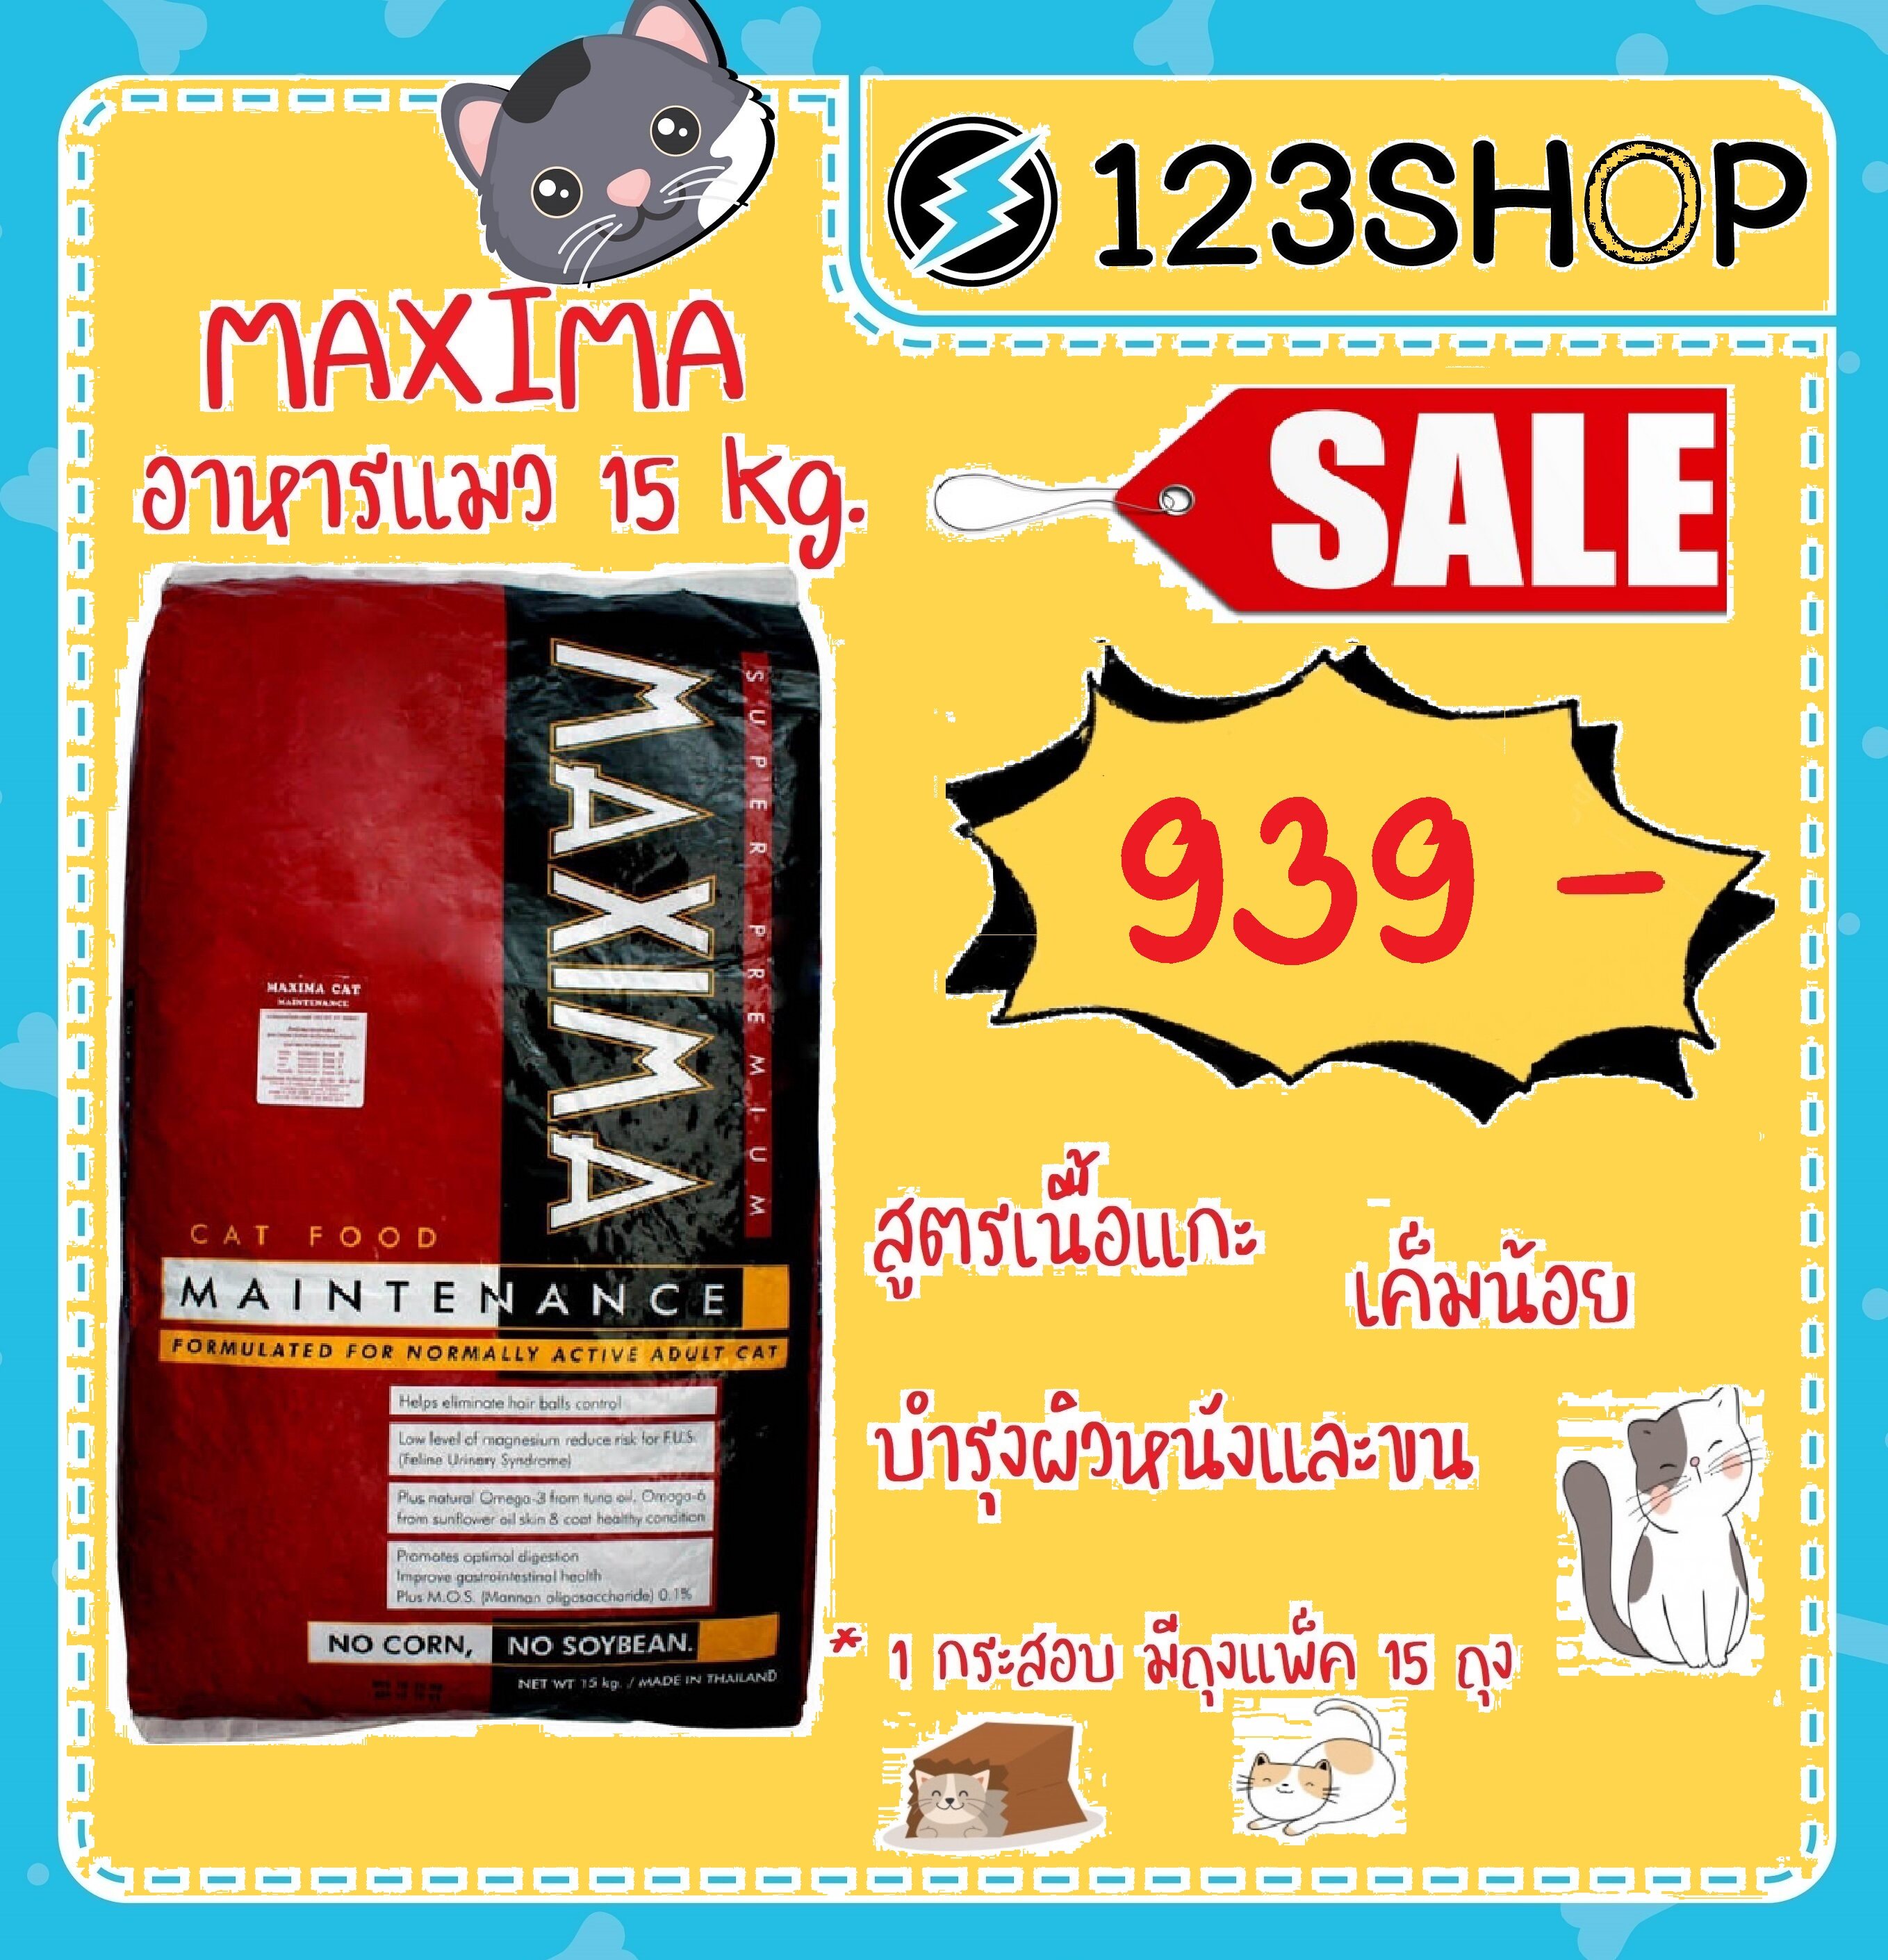 อาหารแมว Maxima แม็กซิม่า กระสอบ15kg (ยกกระสอบ) ร้านจริง โปรดระวังร้านปลอมหลอก !!!